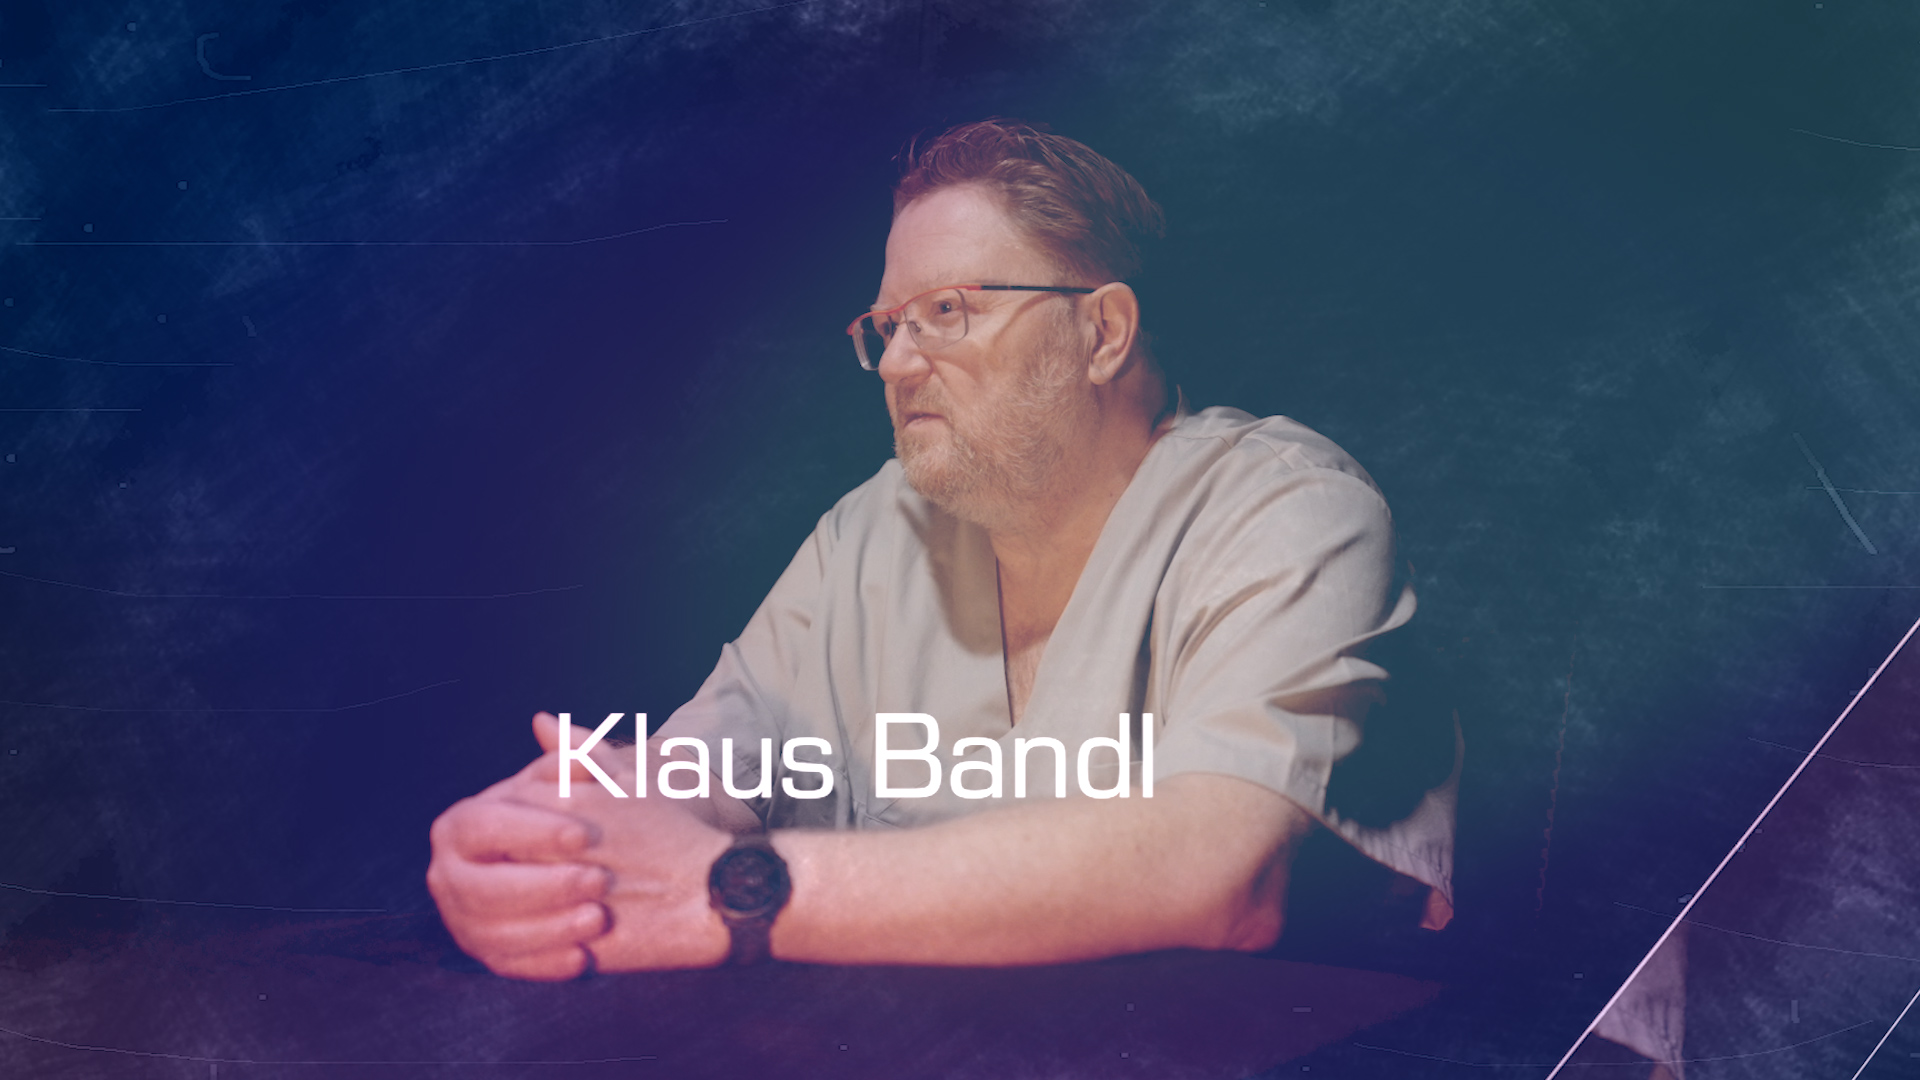 Gesundheits- und Krankenpflege – Ein Beruf, viele Welten  Zu Gast: Klaus Bandl